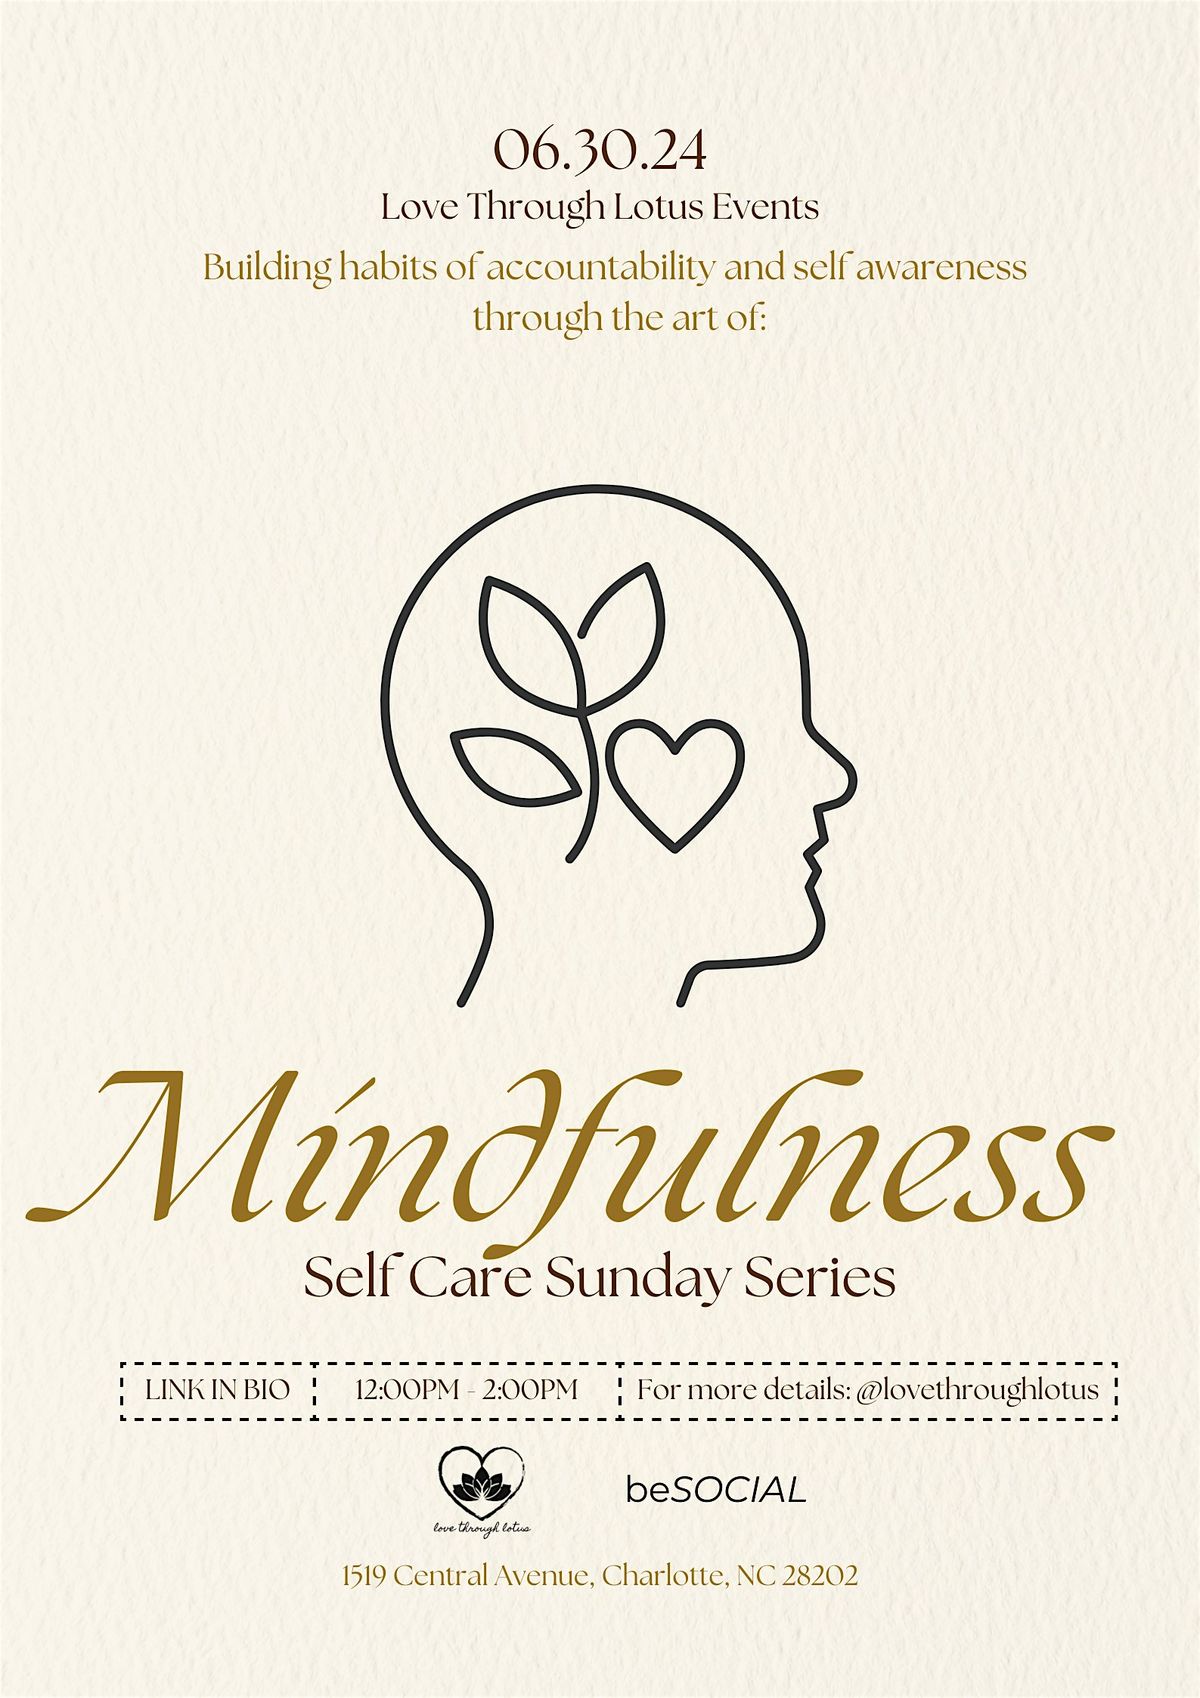 Self Care Sunday Series: Mindfulness